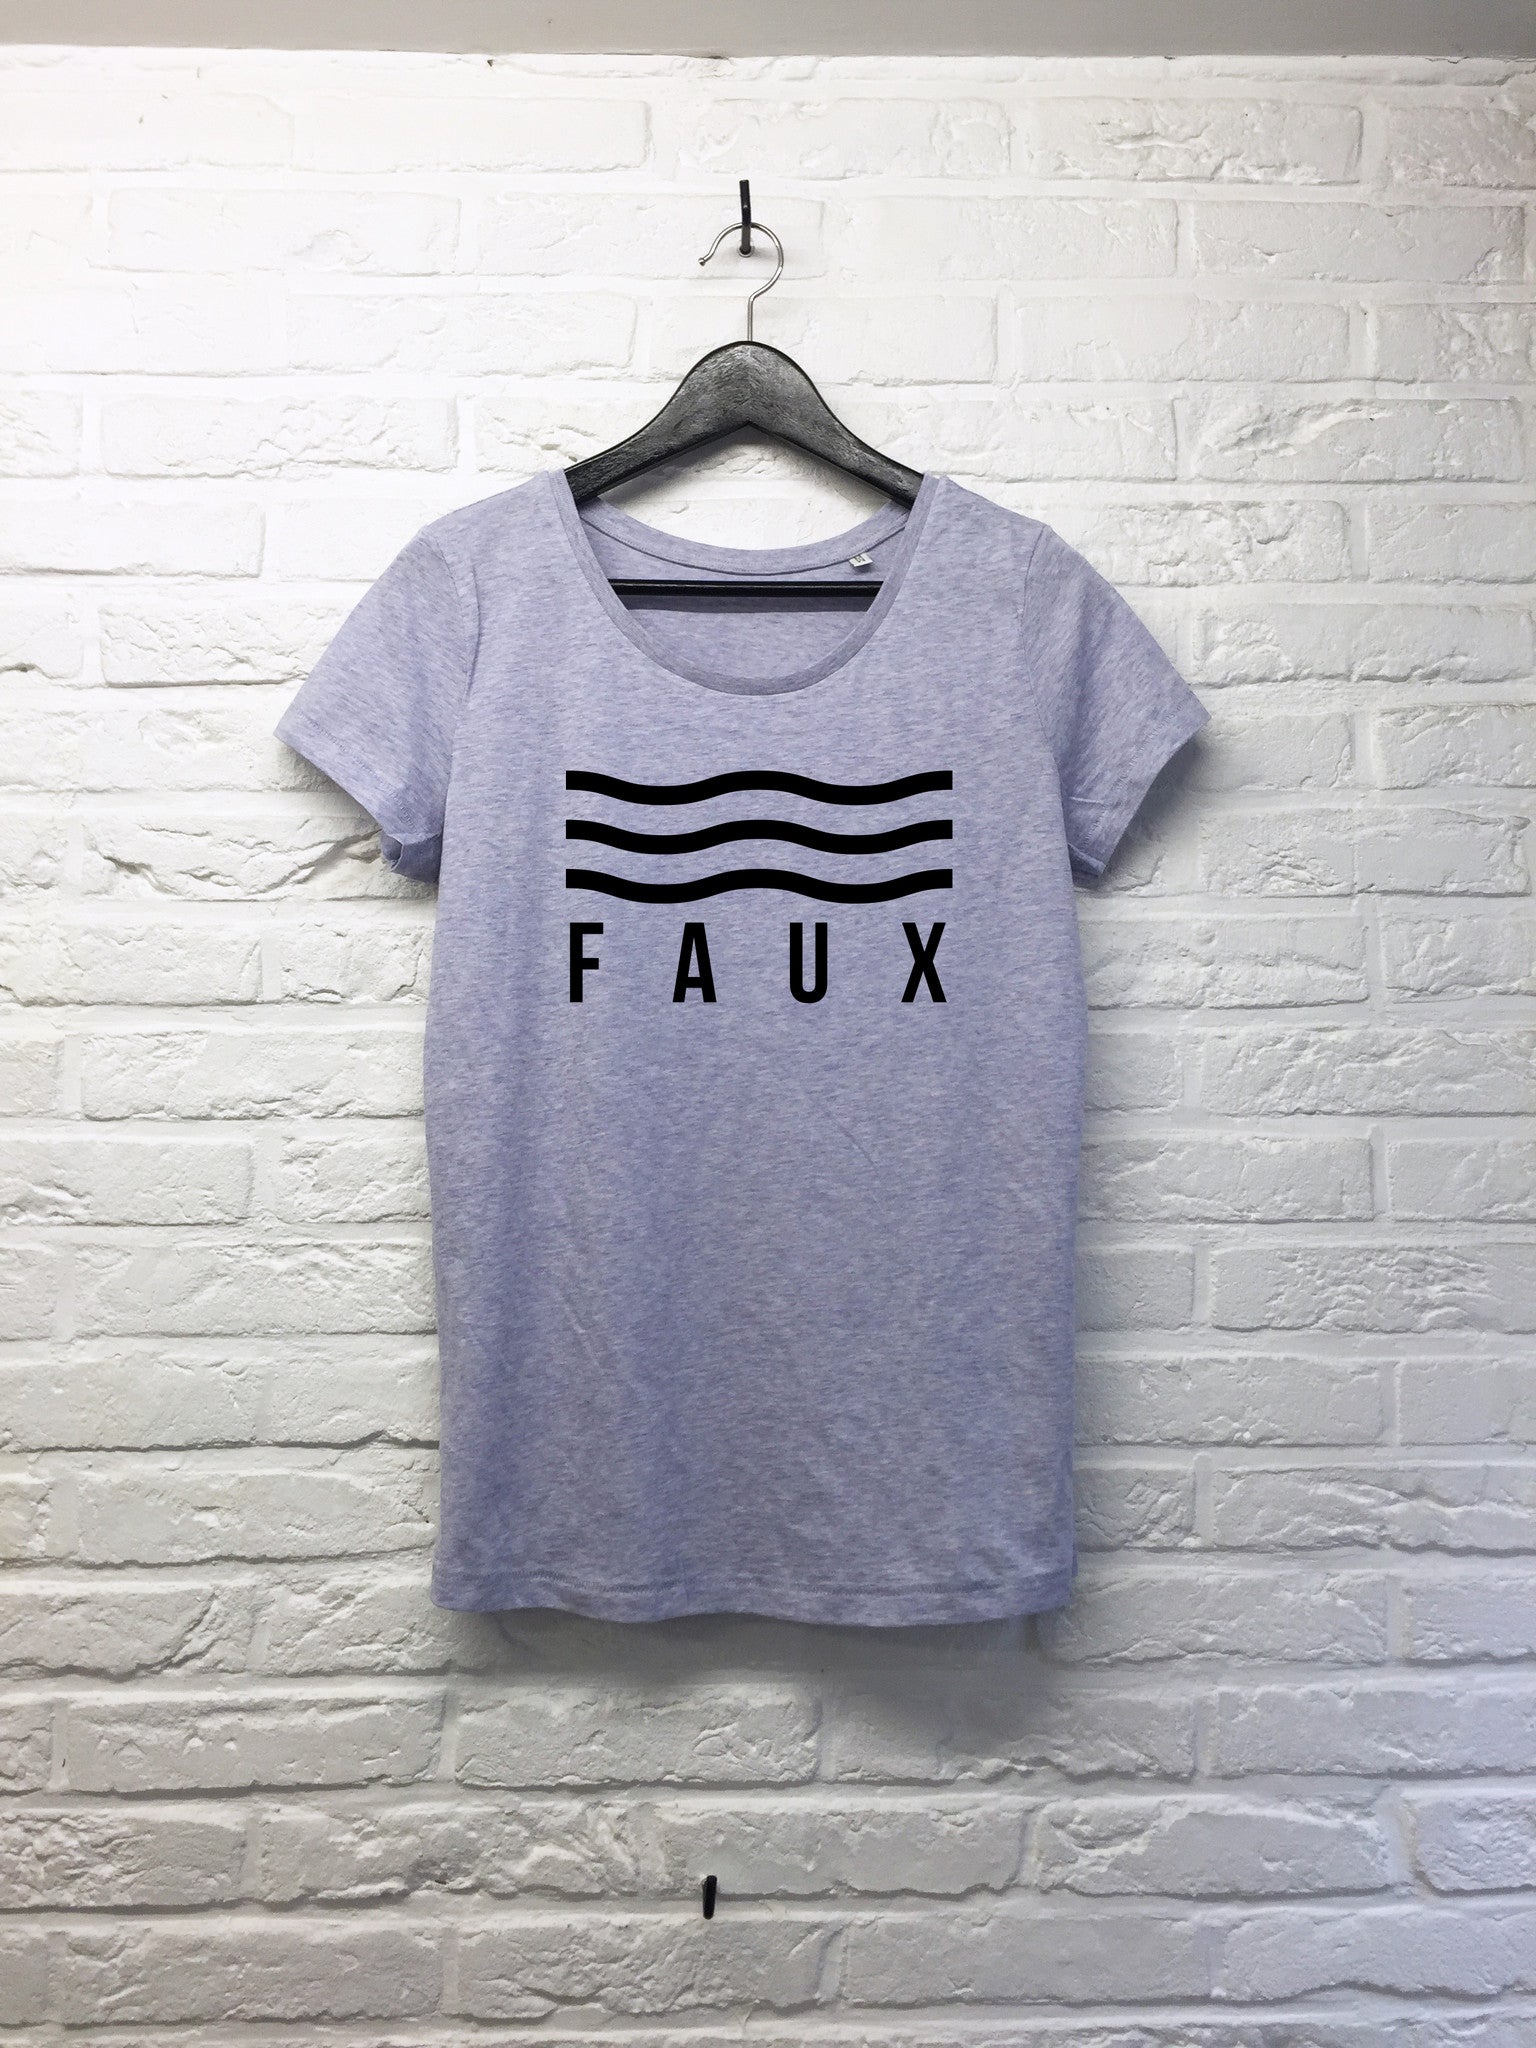 FAUX vagues - Femme-T shirt-Atelier Amelot